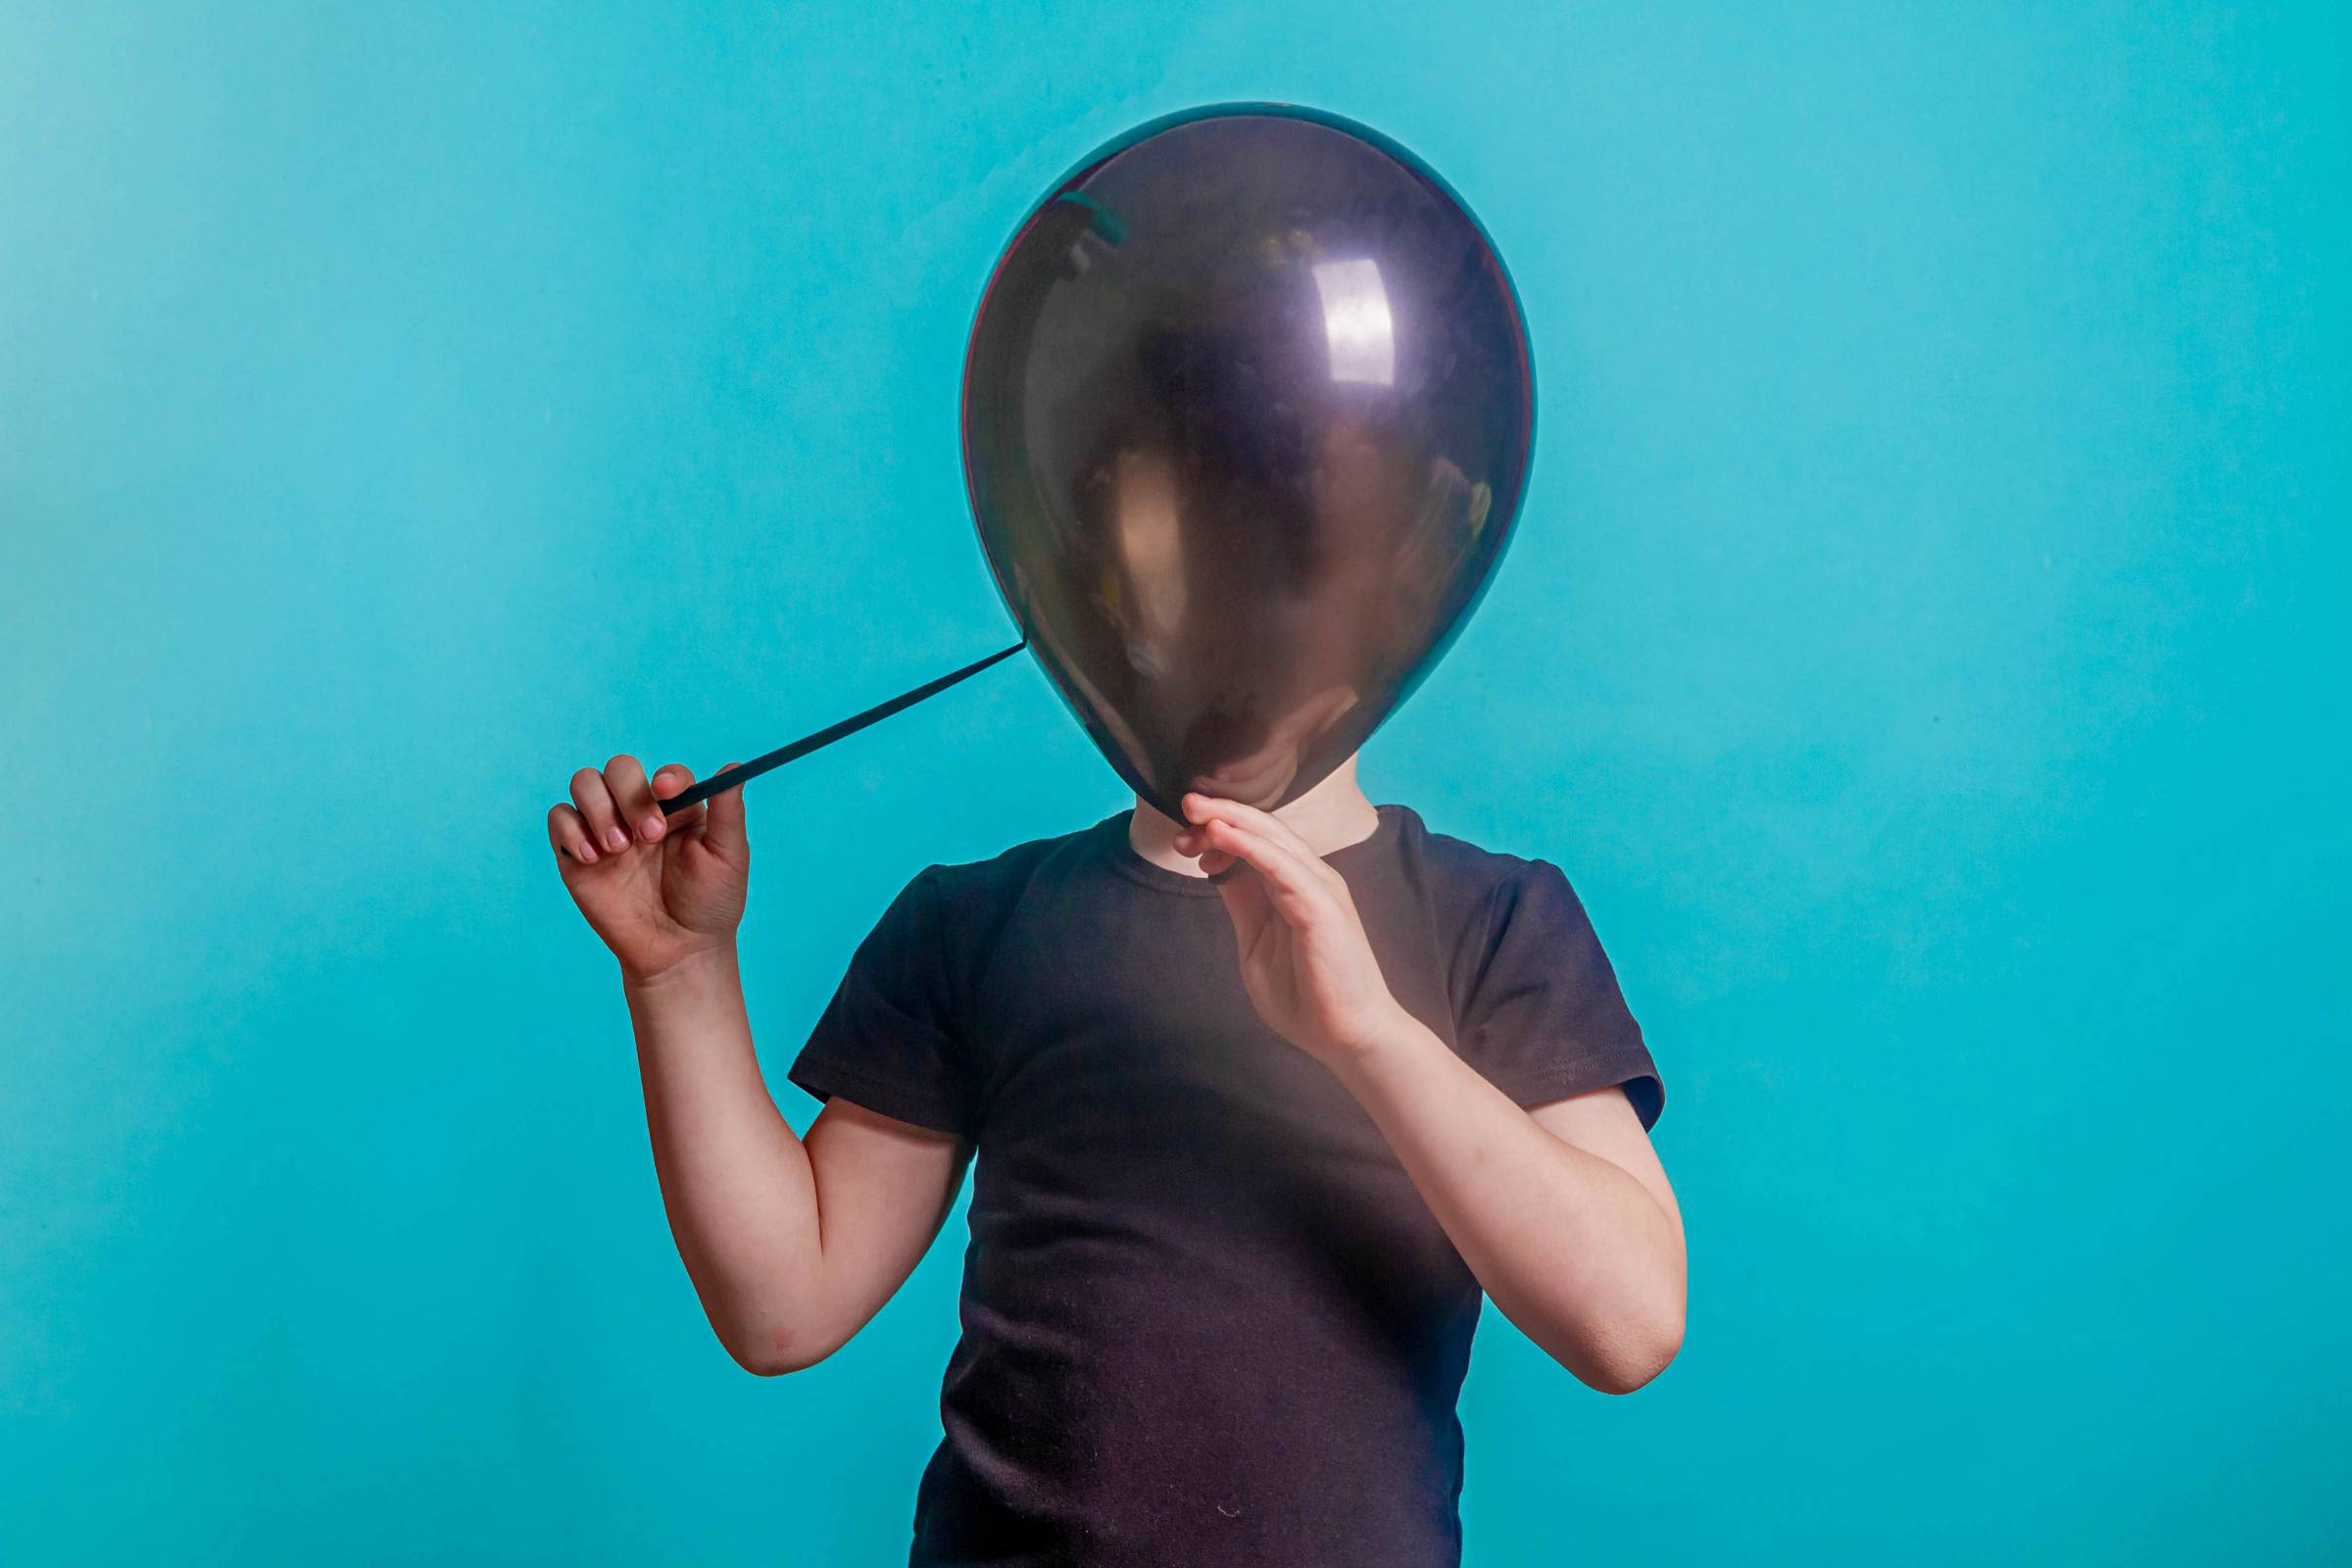 a boy with a balloon